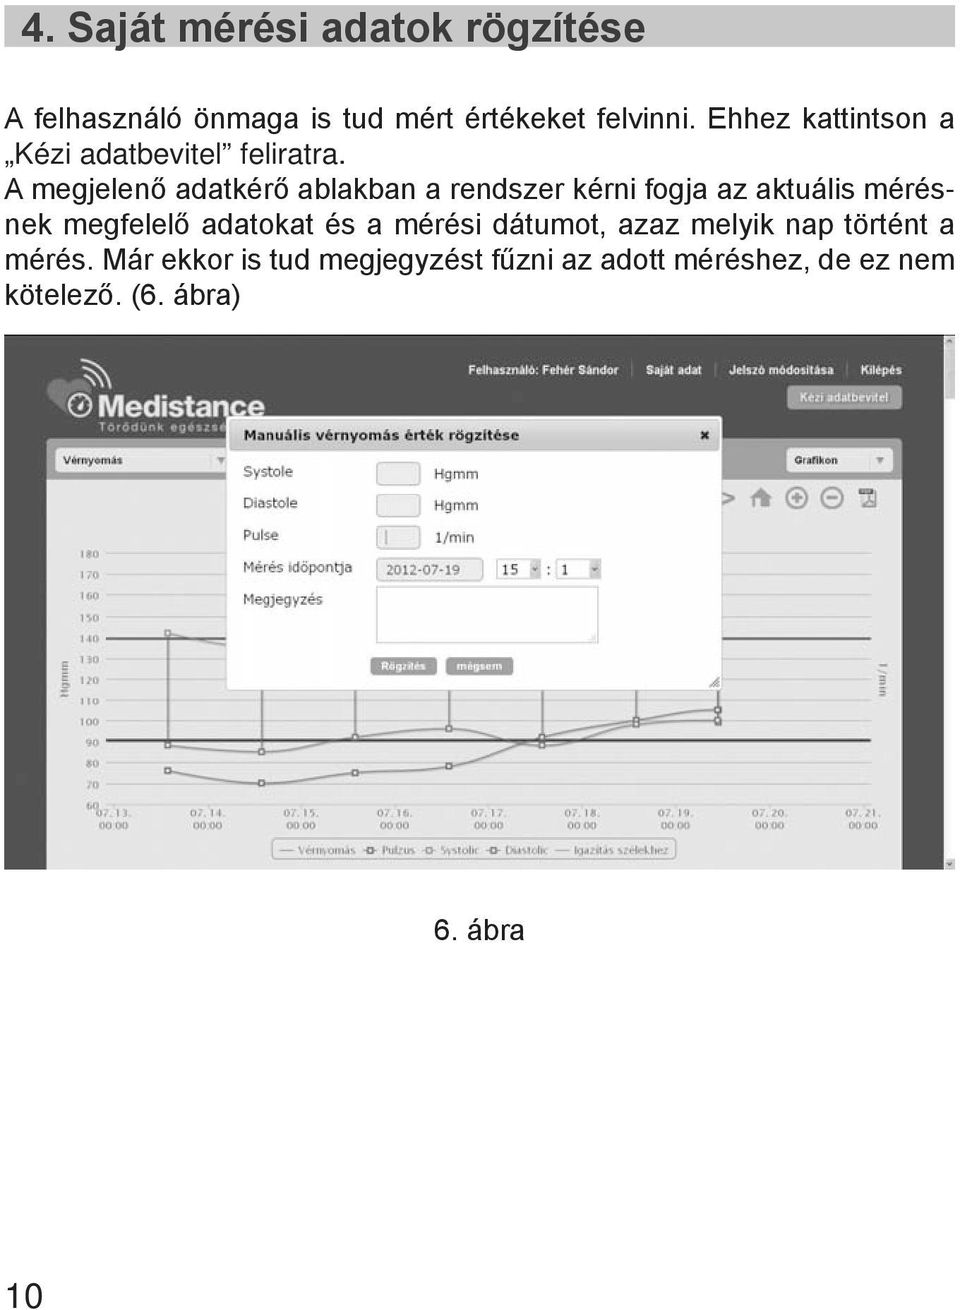 A megjelenő adatkérő ablakban a rendszer kérni fogja az aktuális mérésnek megfelelő adatokat